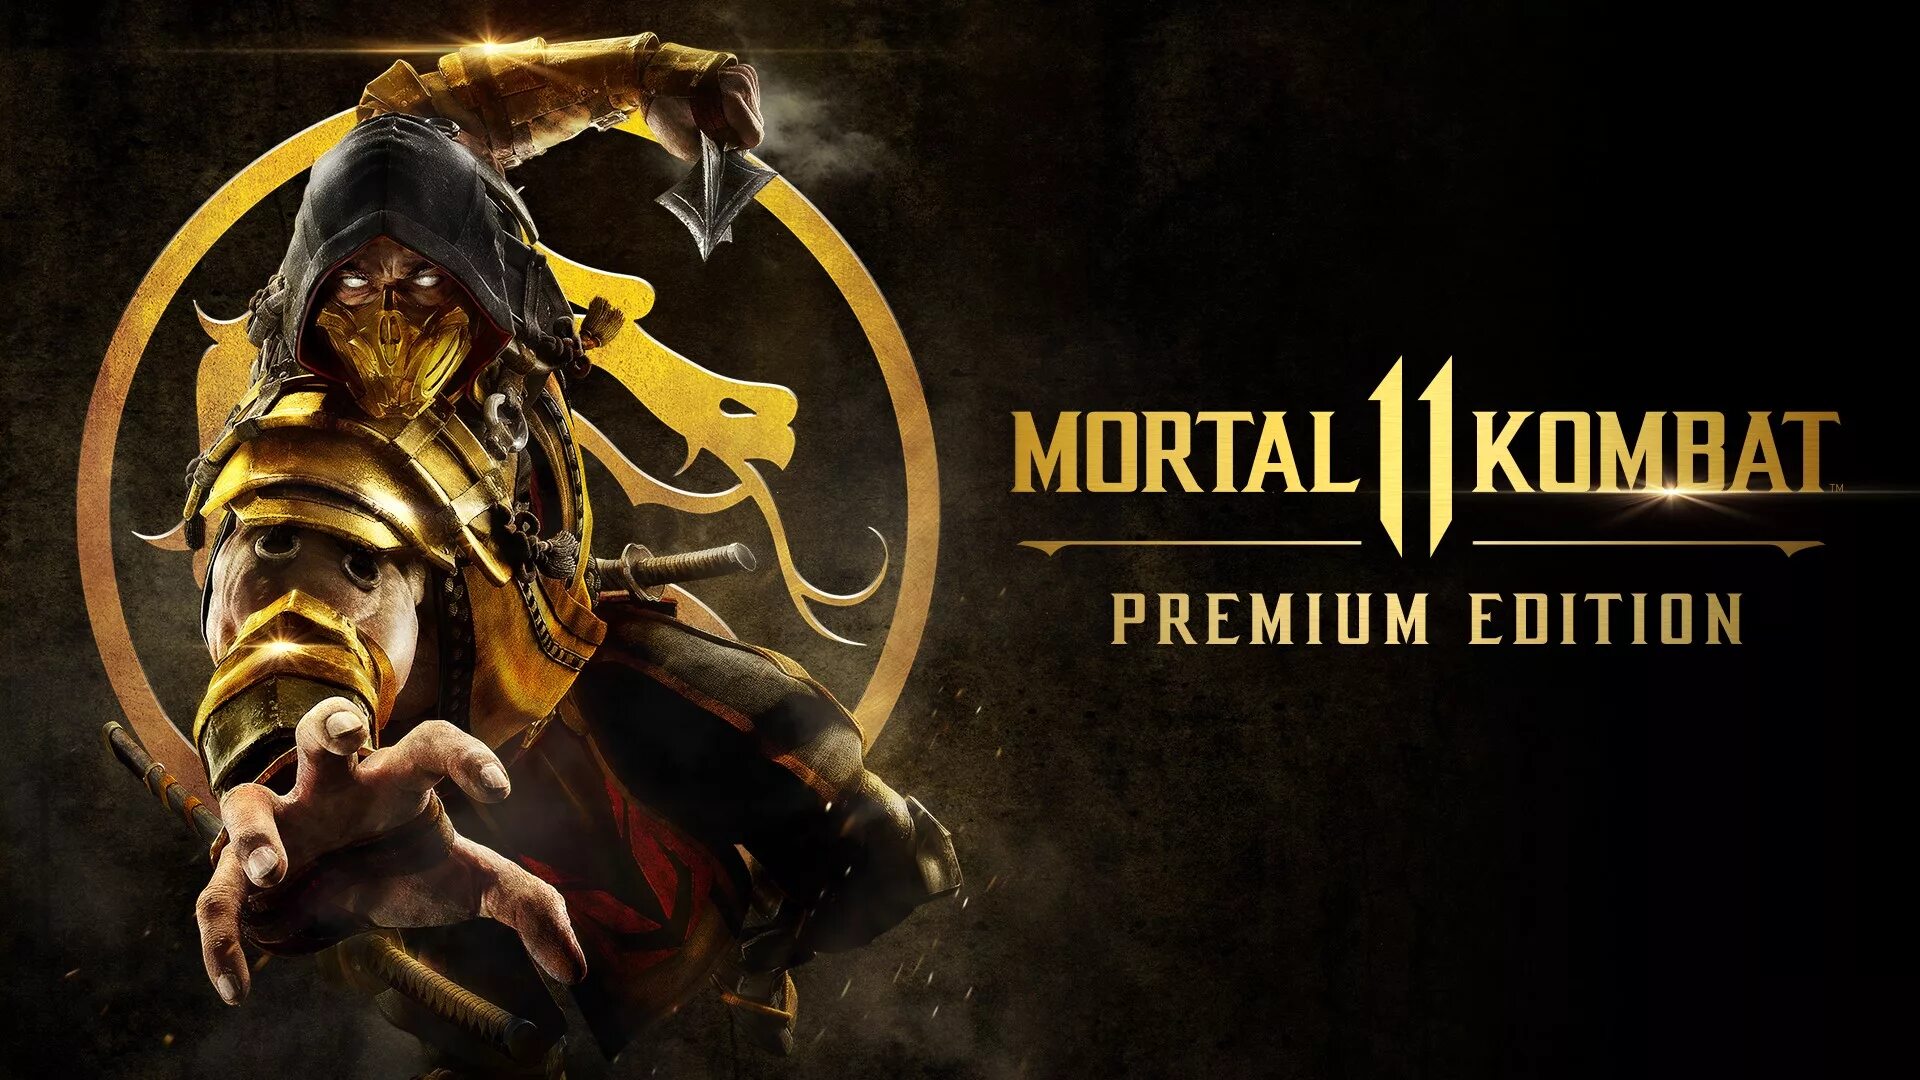 Мортал комбат ps5 купить. MK 11 Ultimate. Mortal Kombat 11 (ps4). Mortal Kombat 11. Premium Edition. PLAYSTATION 4 Mortal Kombat 11 обложка.